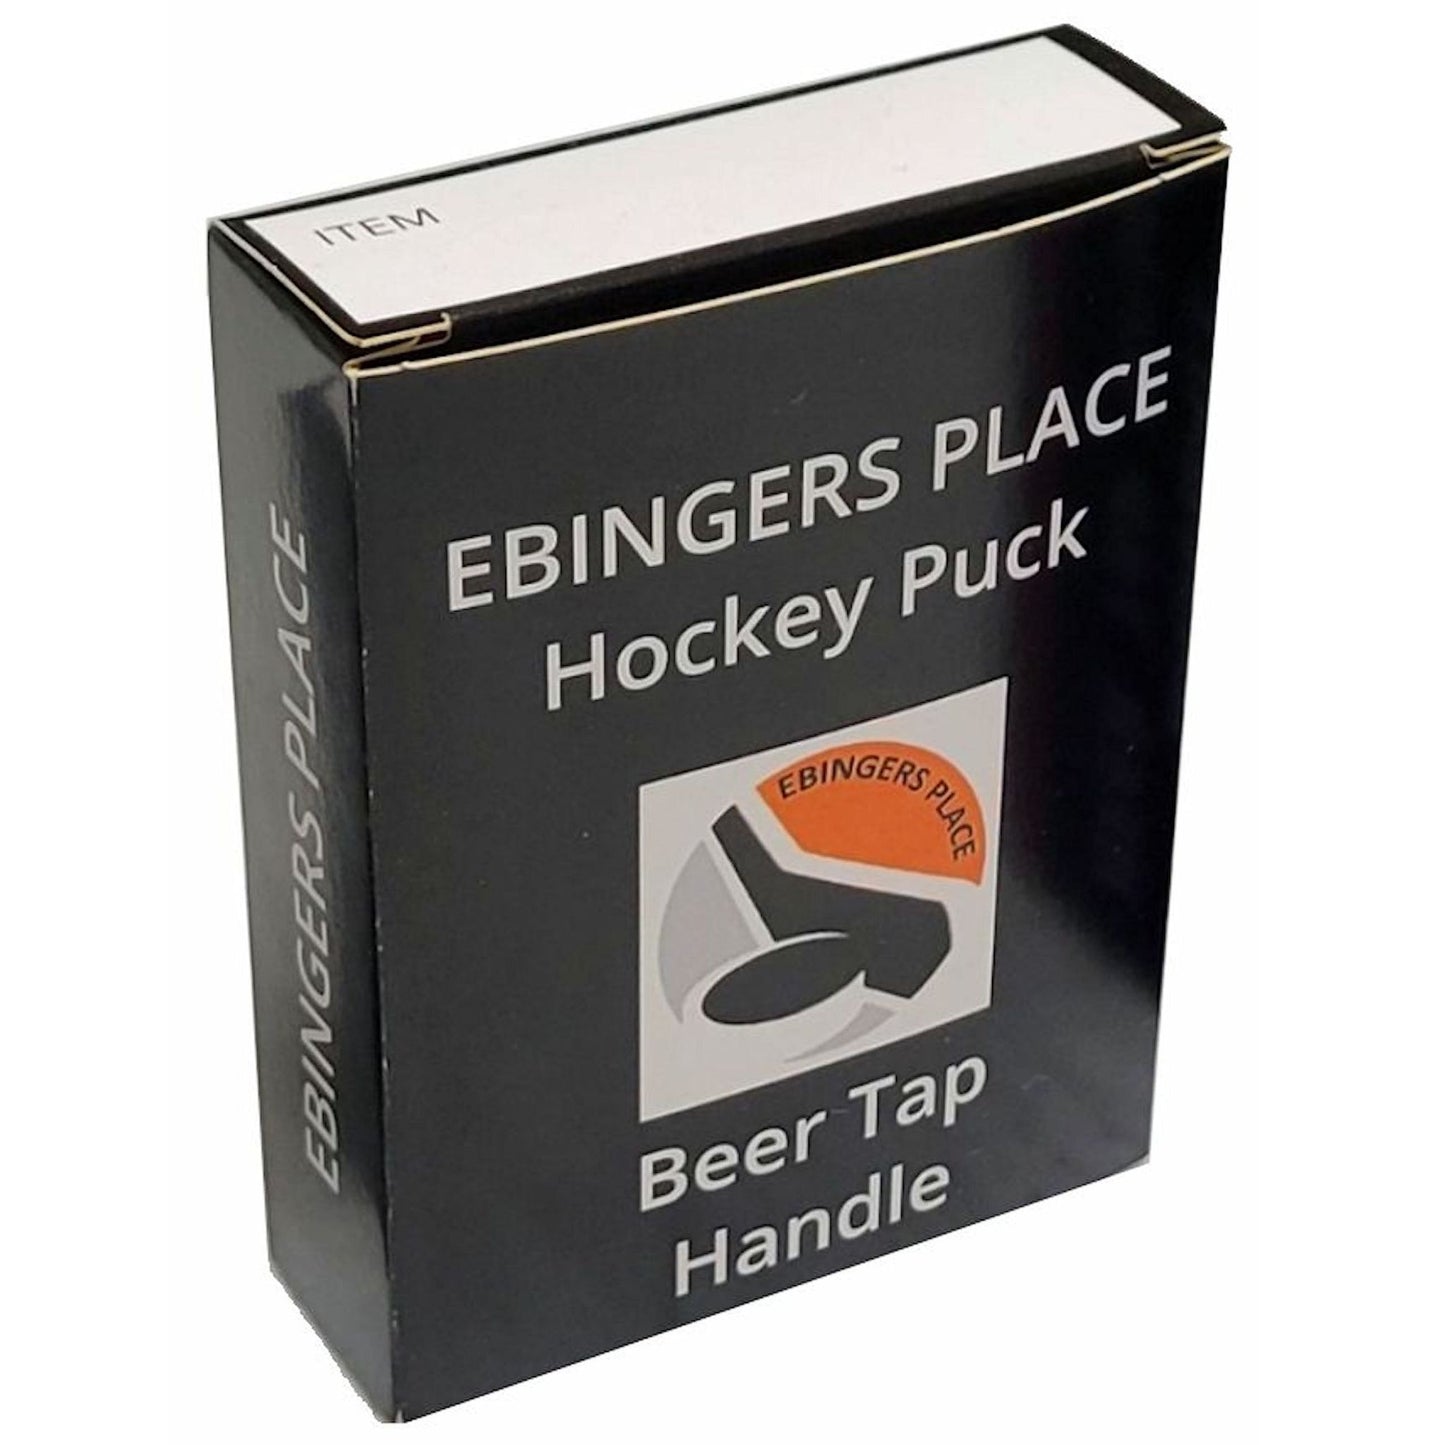 Pittsburgh Penguins Clone Series Hockey Puck Beer Tap Handle